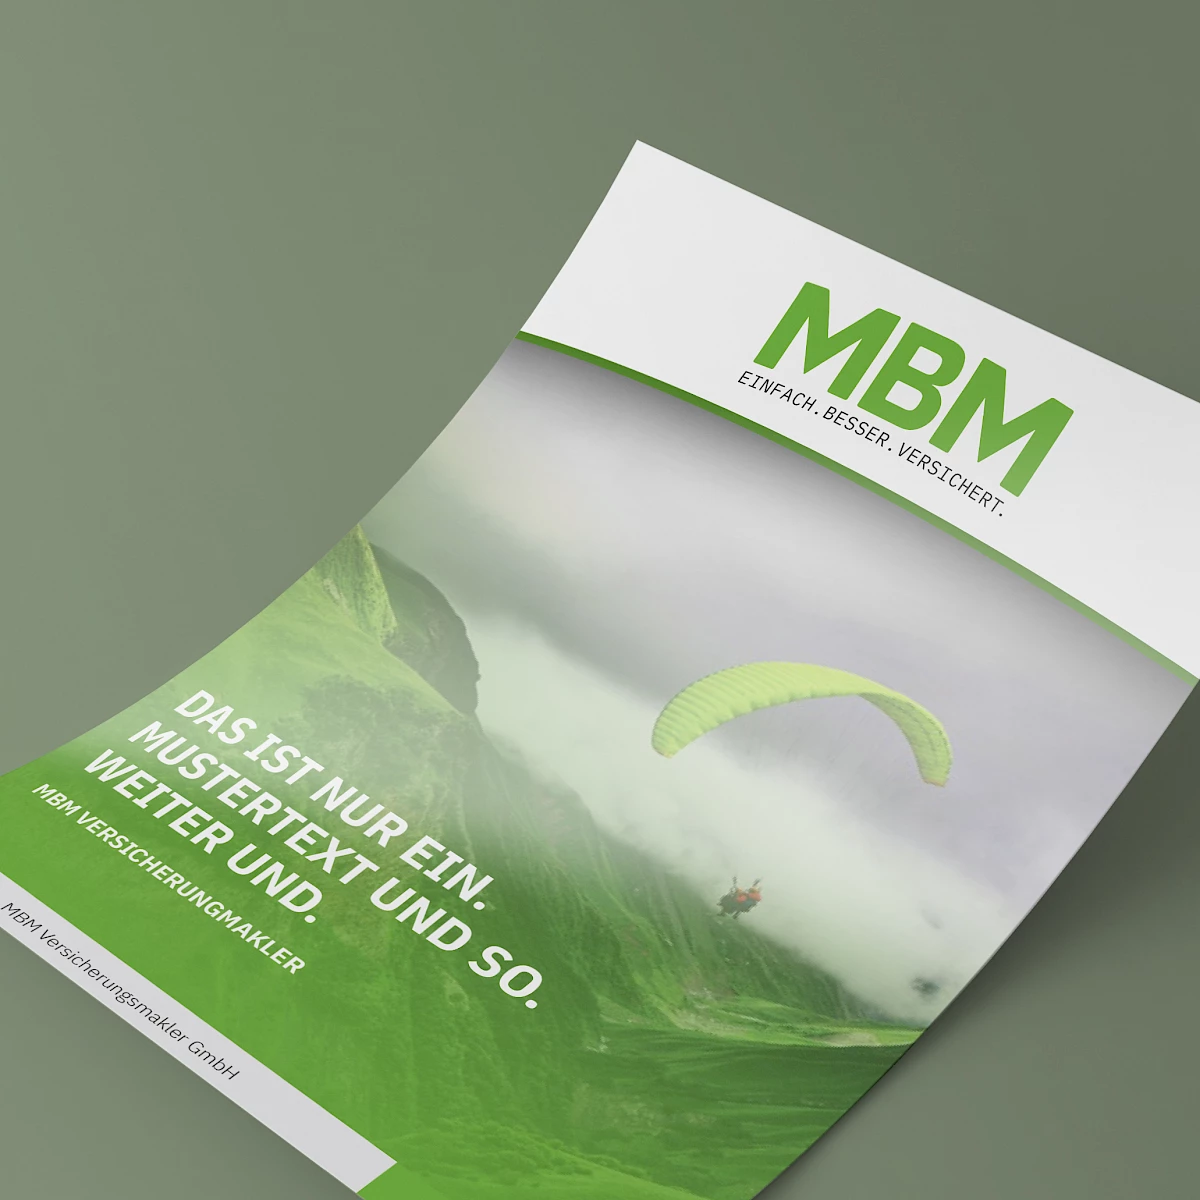 MBM Versicherungsmakler GmbH – Kunde und Referenz der Werbeagentur Buerostark in Telfs Pfaffenhofen. Corporate Design, Webdesign und Programmierung.